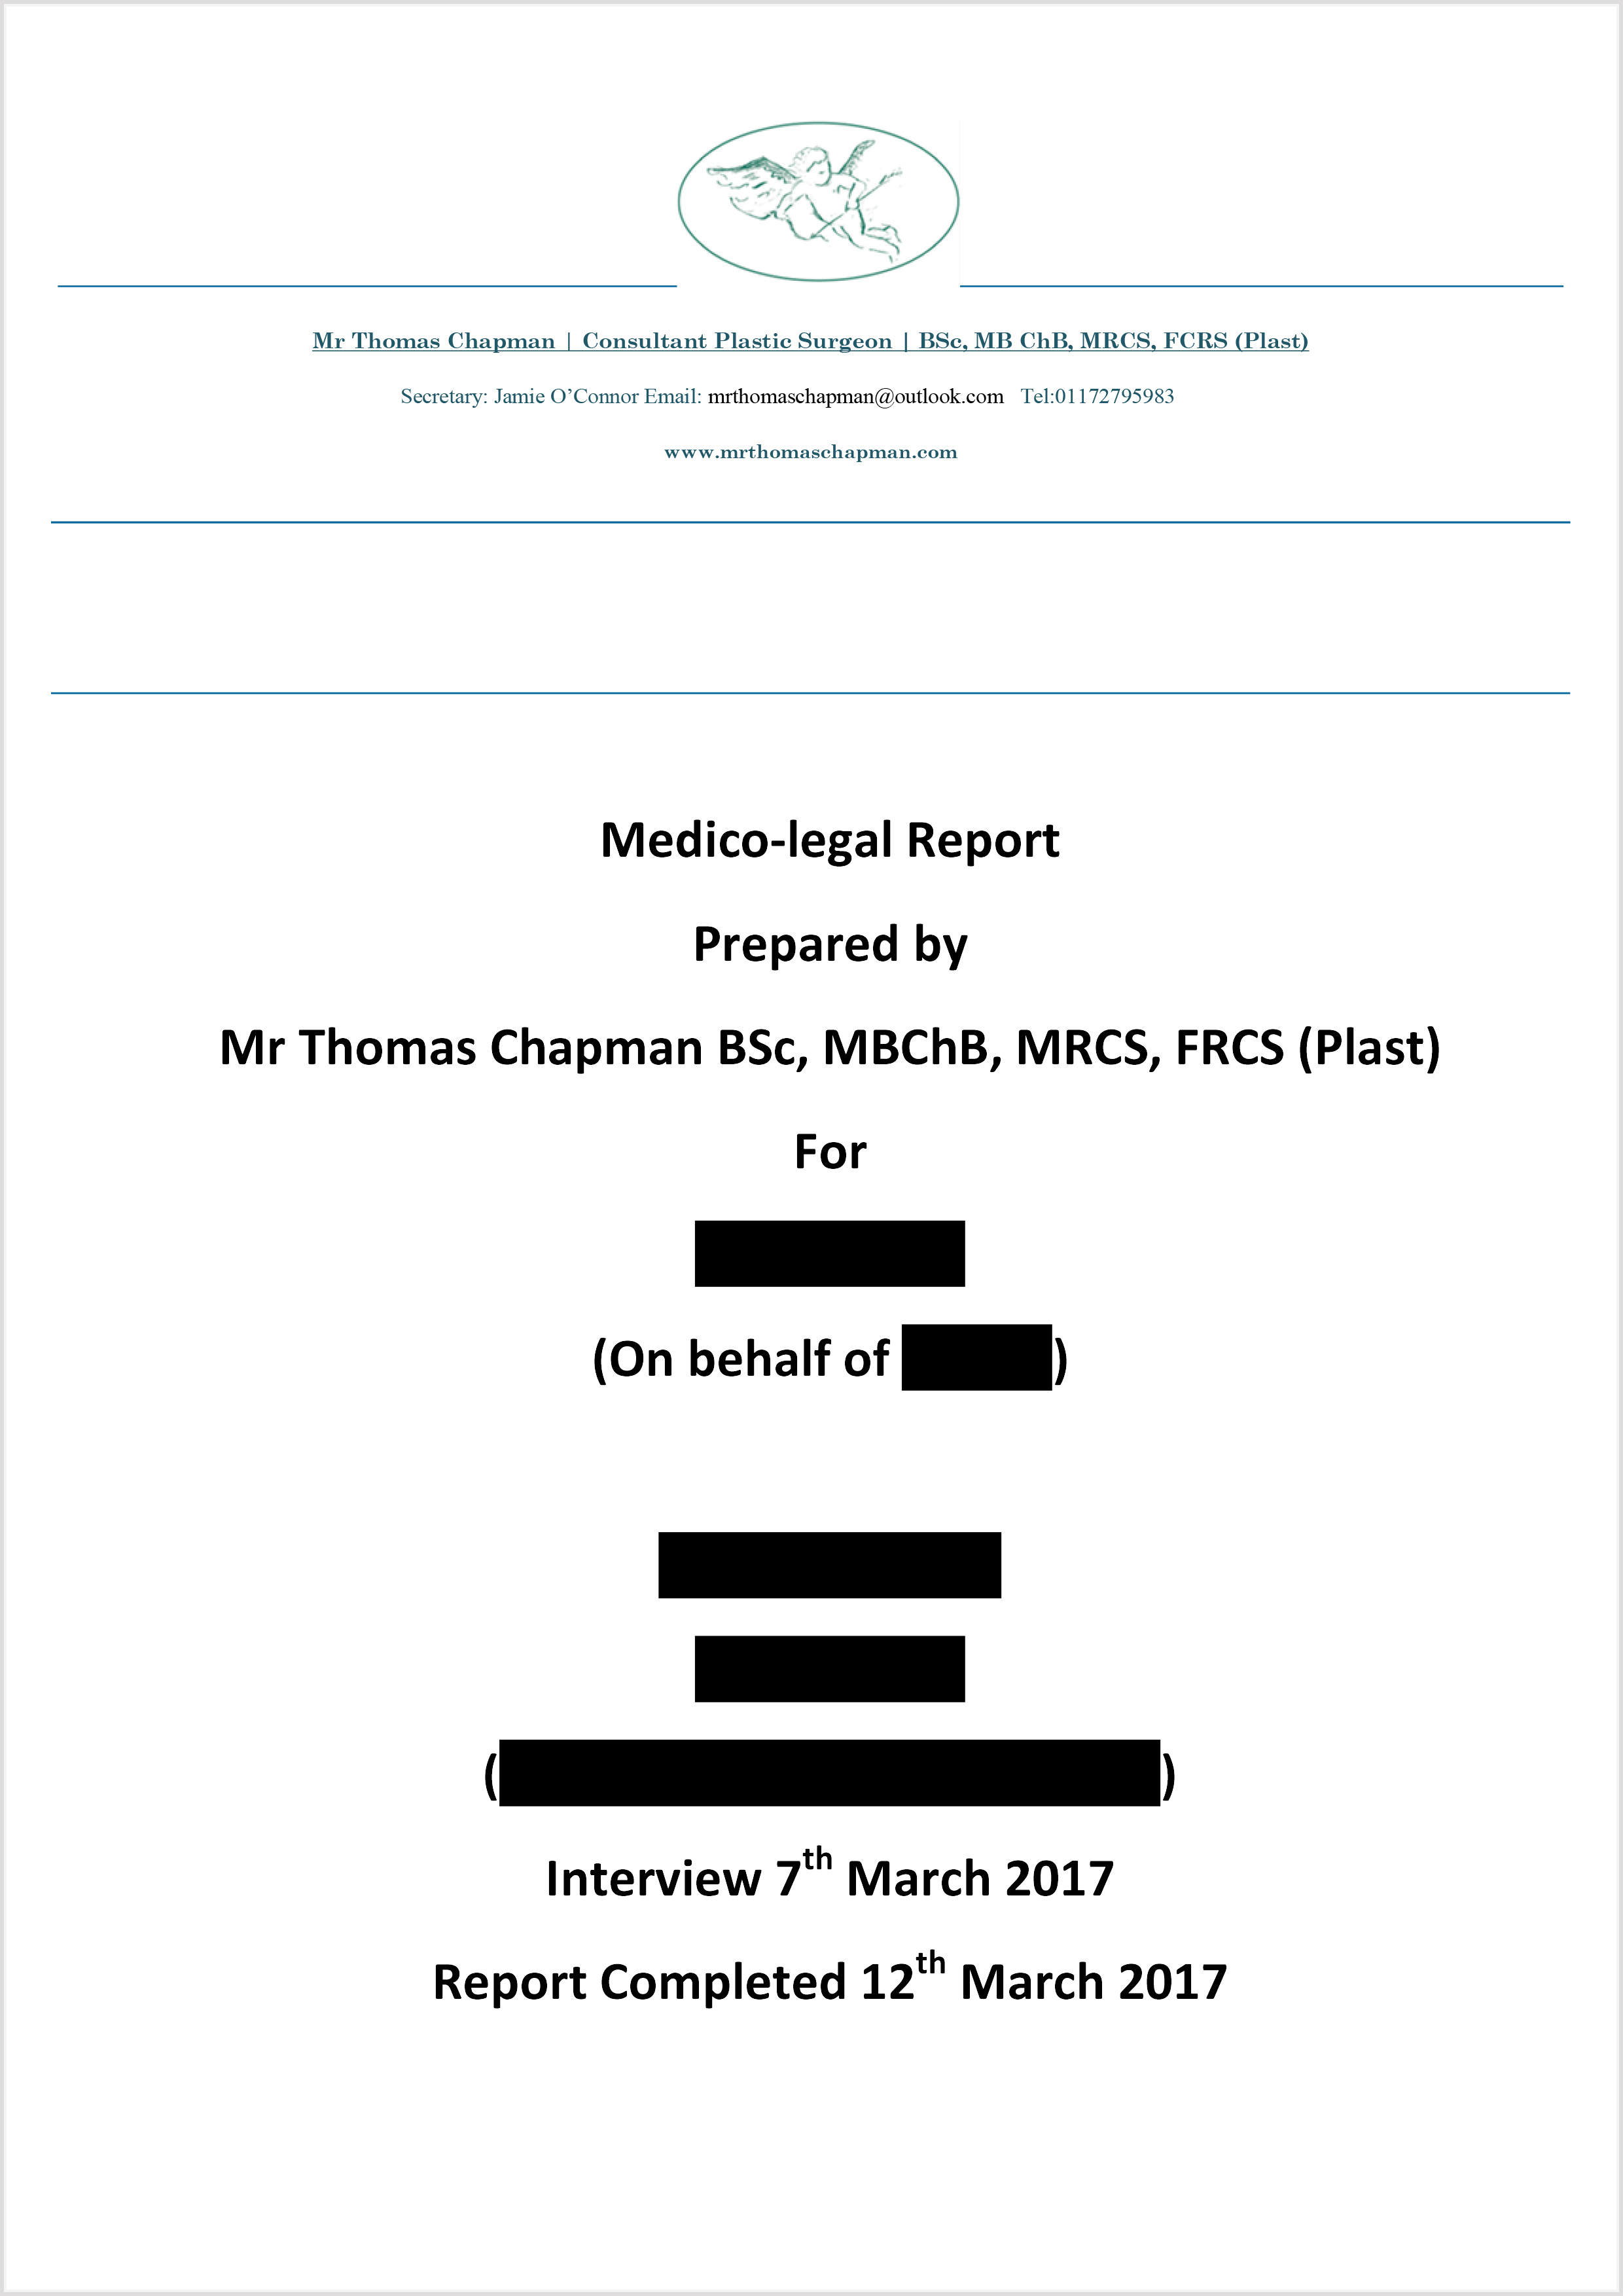 MedicoLegal Reporting - Mr Thomas Chapman Inside Medical Legal Report Template